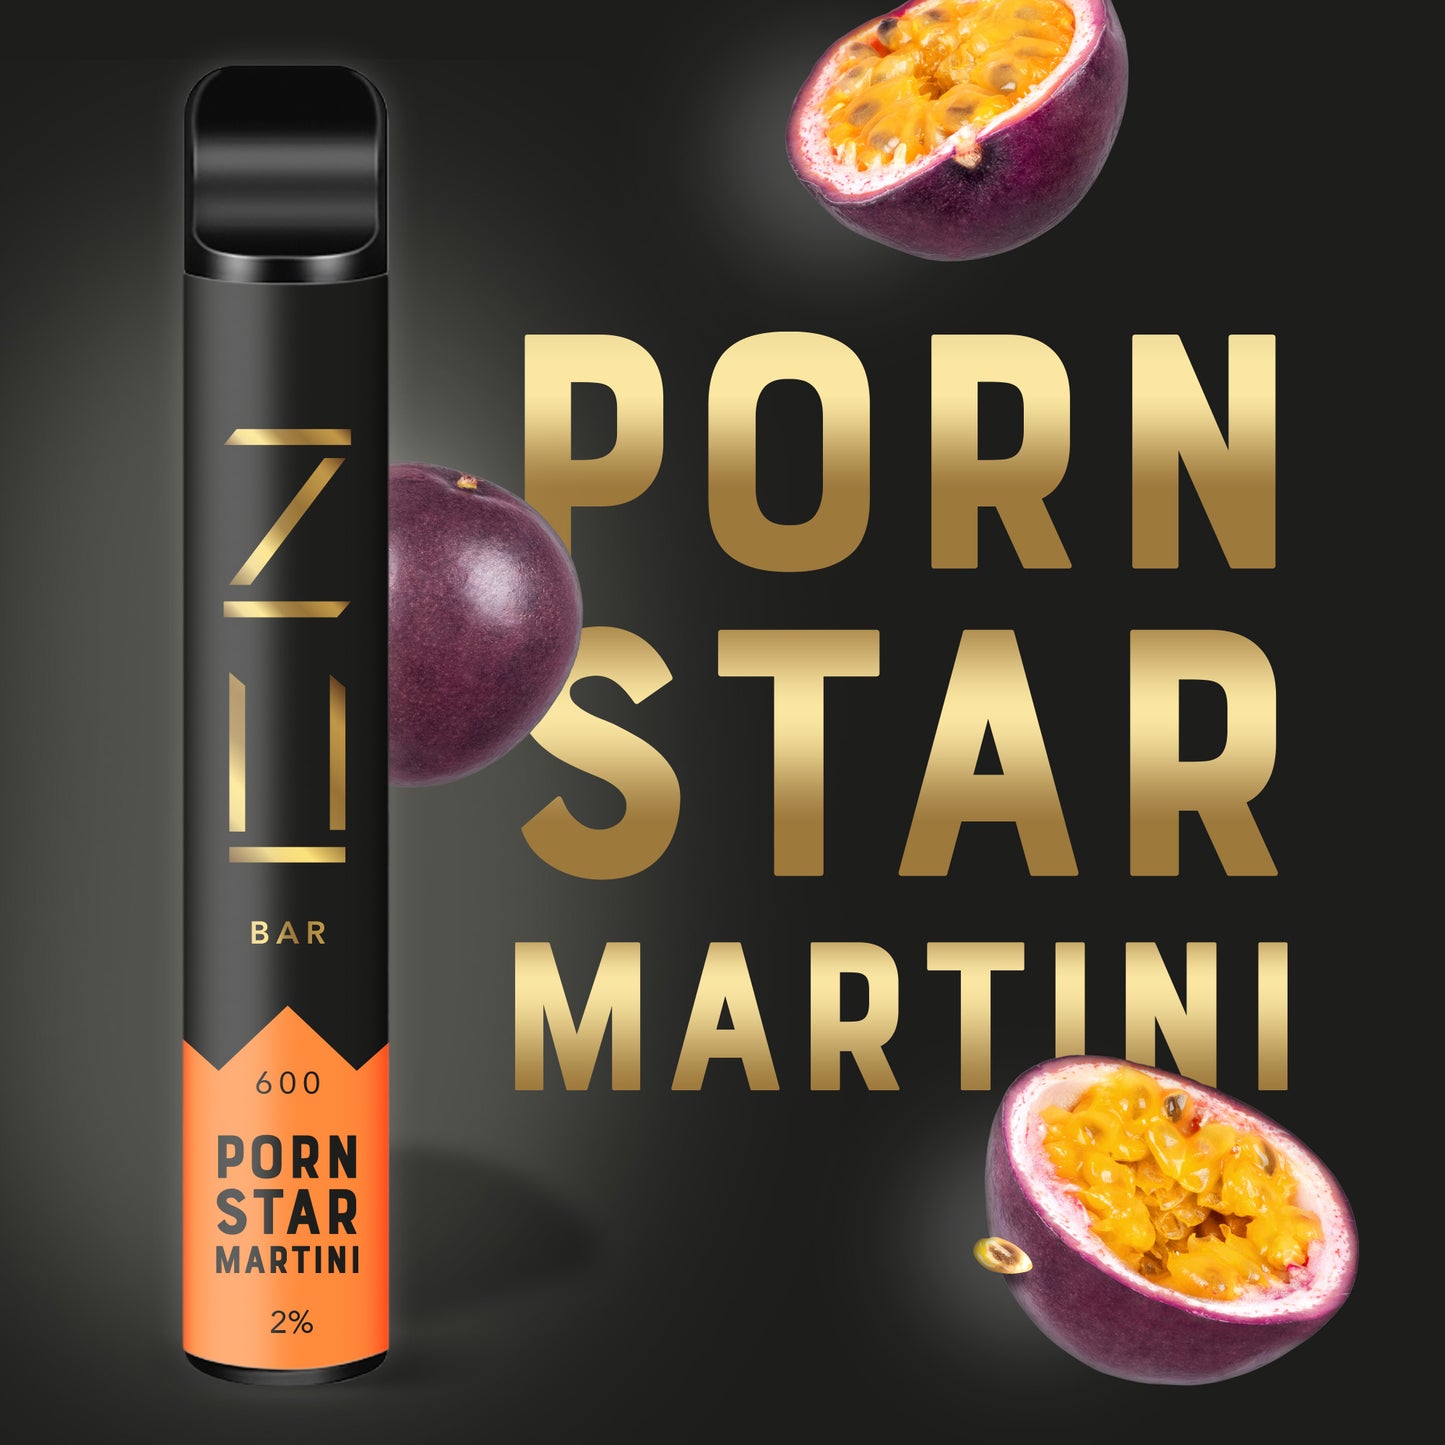 ZU Bar Porn Star Martini Disposable Pod